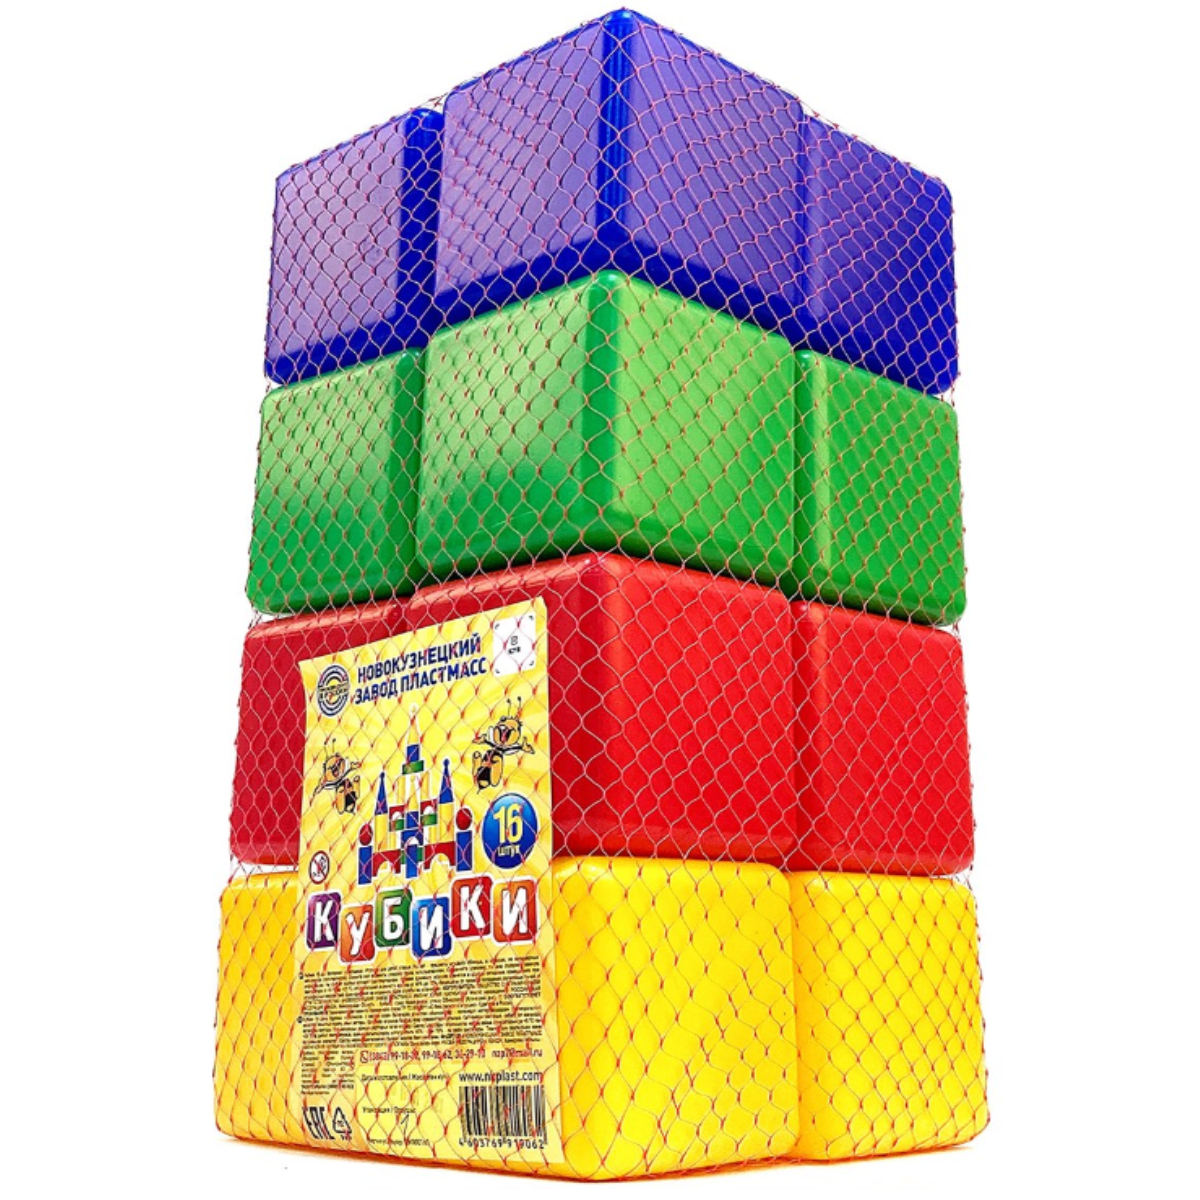 Игровой набор для детей Новокузнецкий Завод Пластмасс Кубики цветные развивающие 16 шт - фото 5